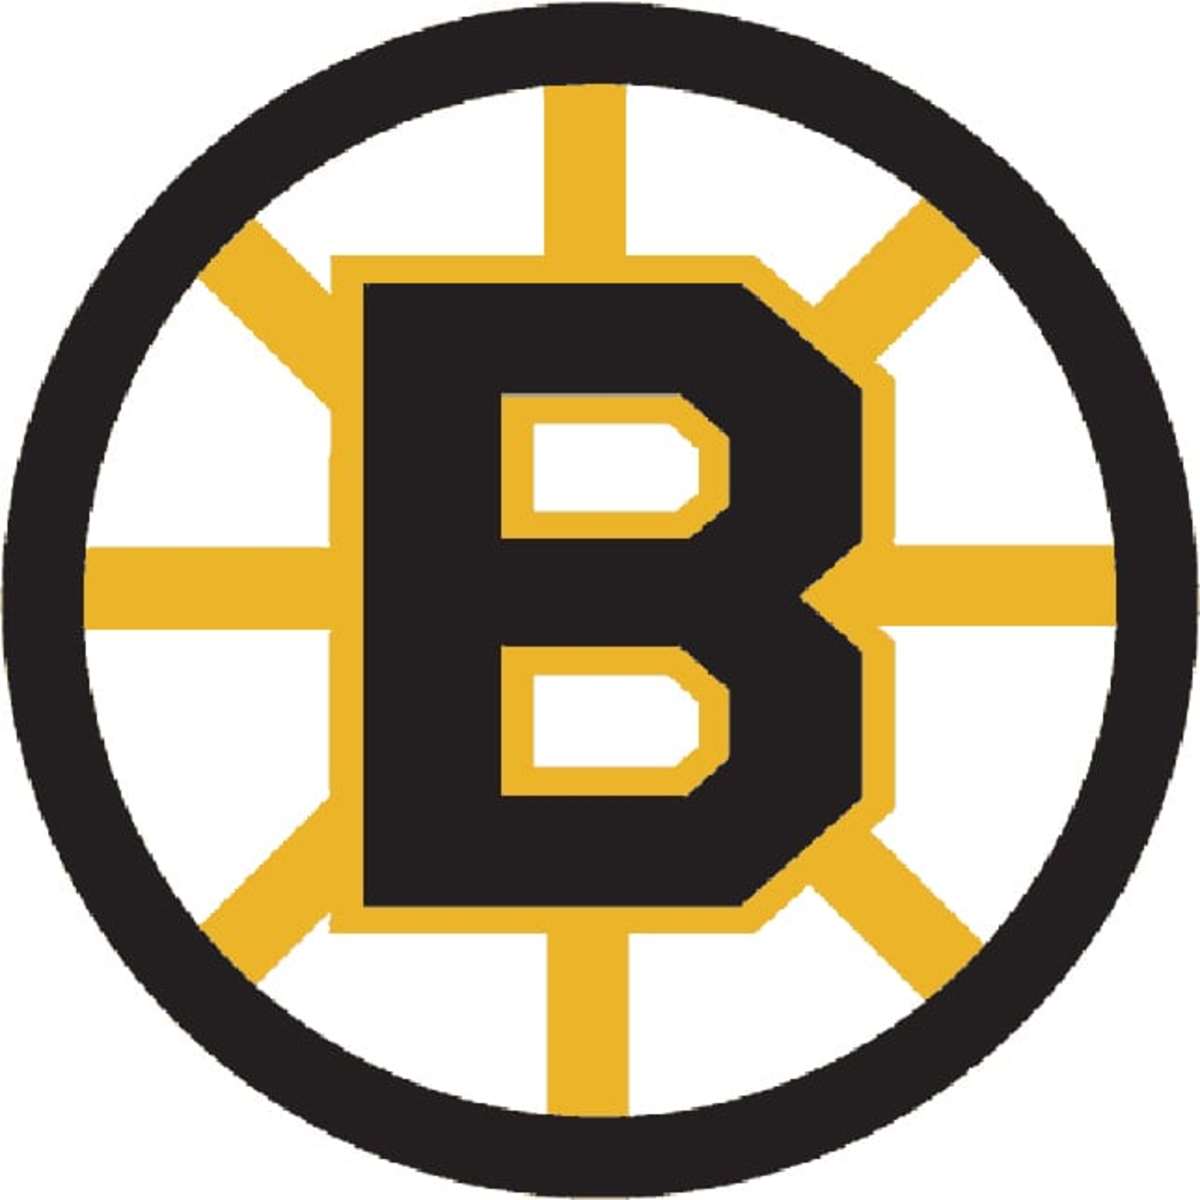 Nhl Logo Rankings No 7 Boston Bruins Thehockeynews